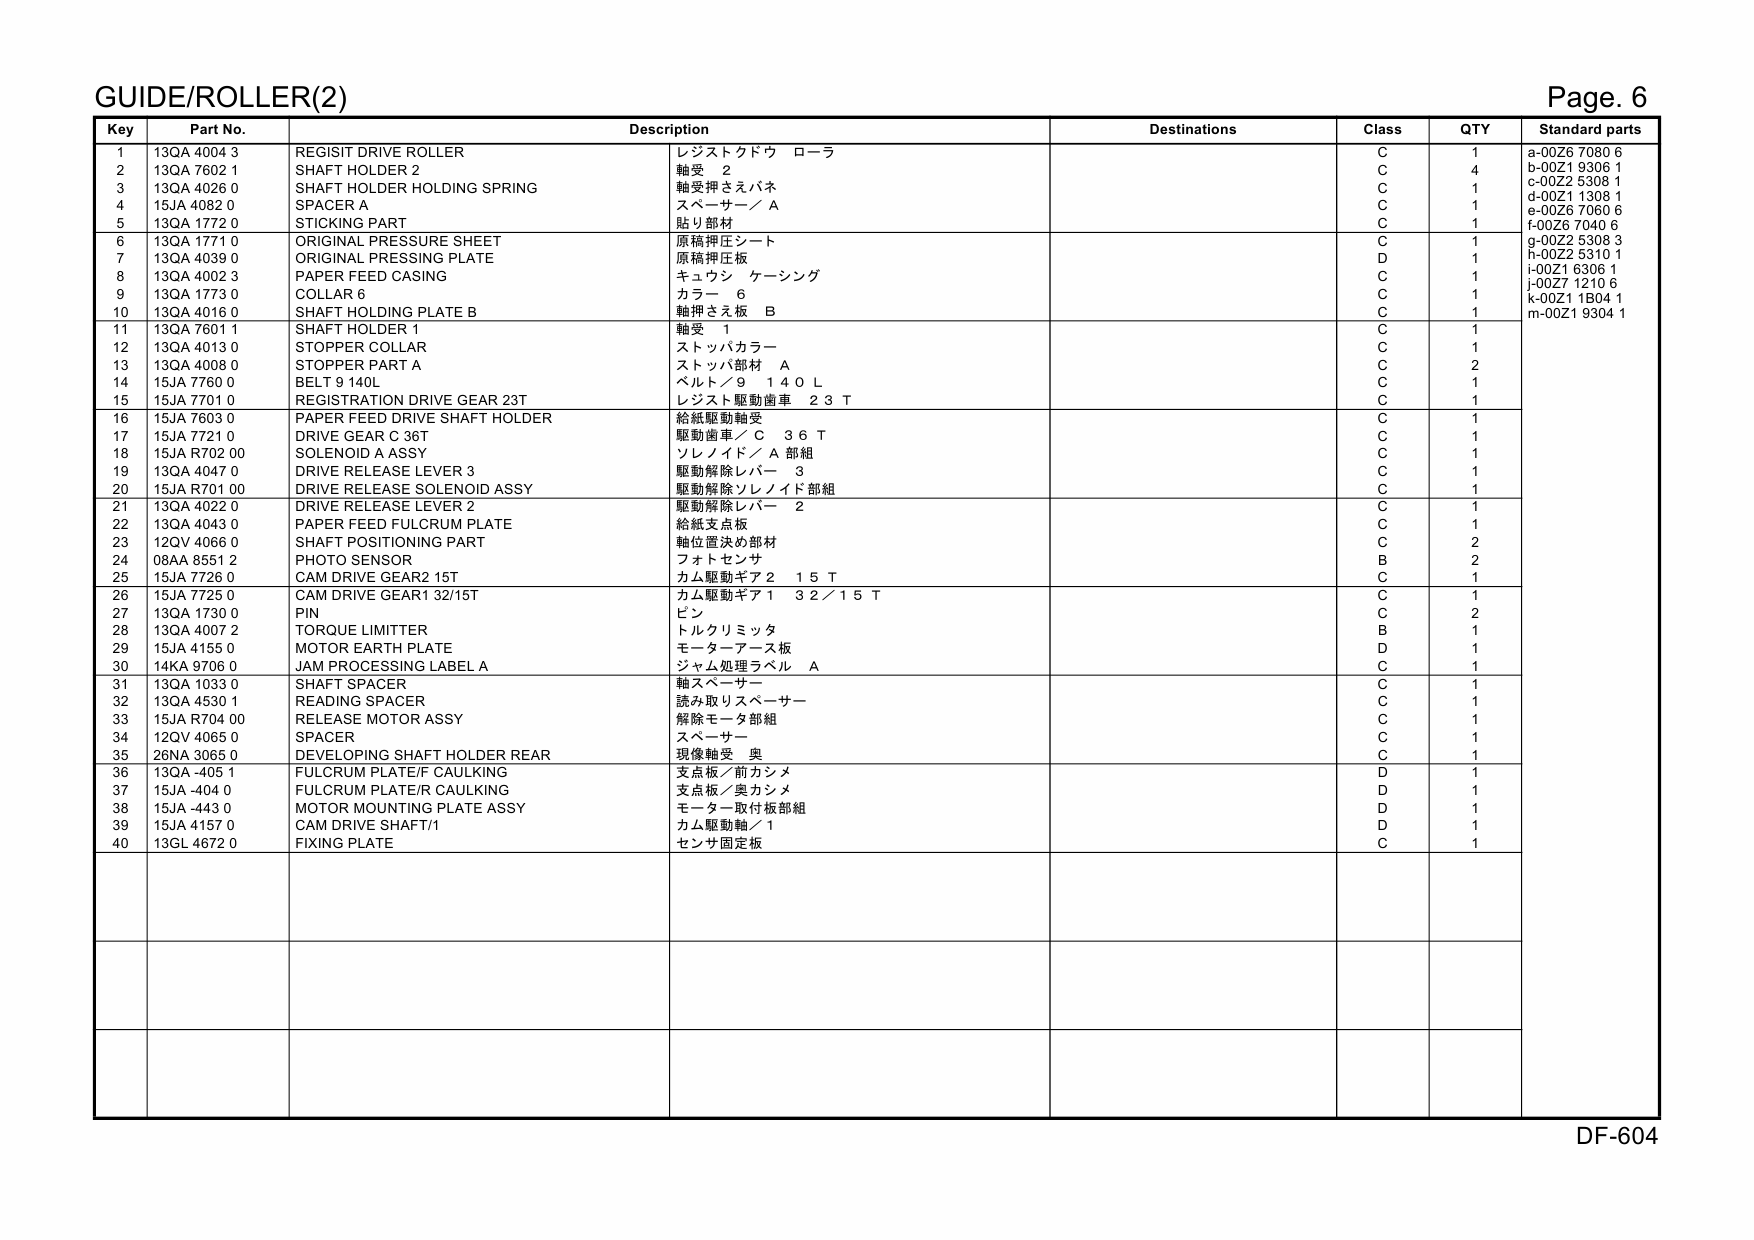 Konica-Minolta Options DF-604 15JA Parts Manual-4